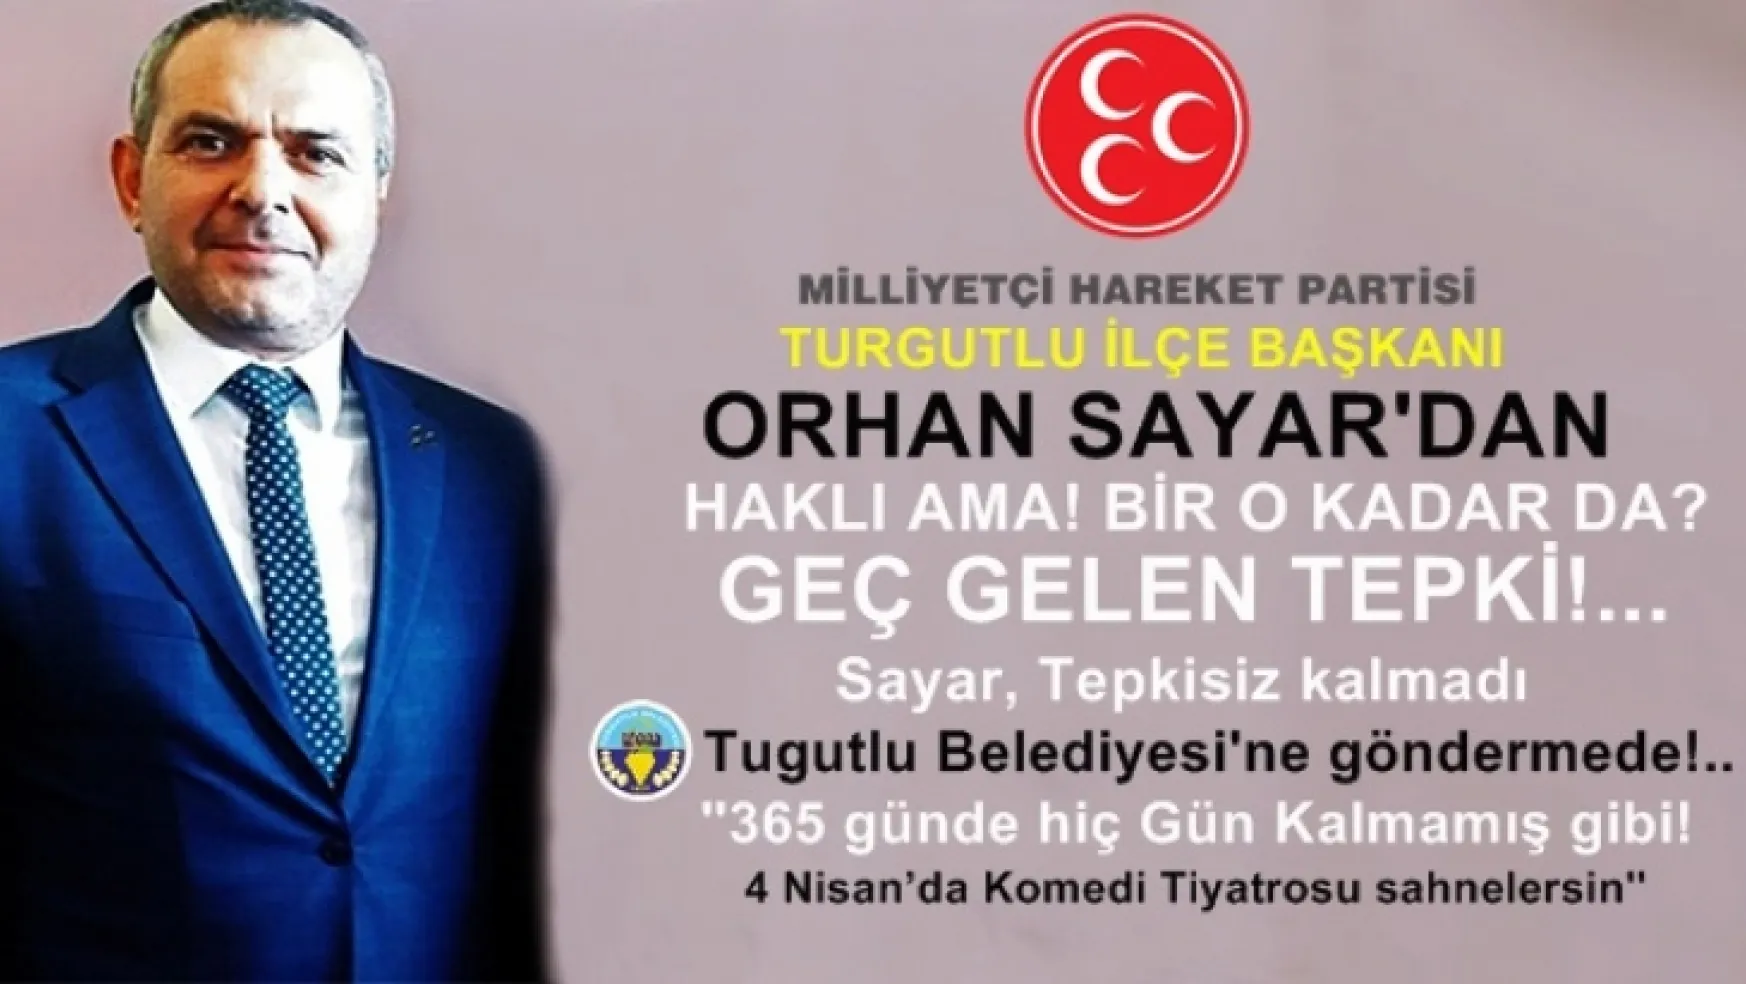 Başkan Sayar' 'Turgutlu Belediyesi'ne zersenişte bulundu, 'Başbuğu anlamak!...